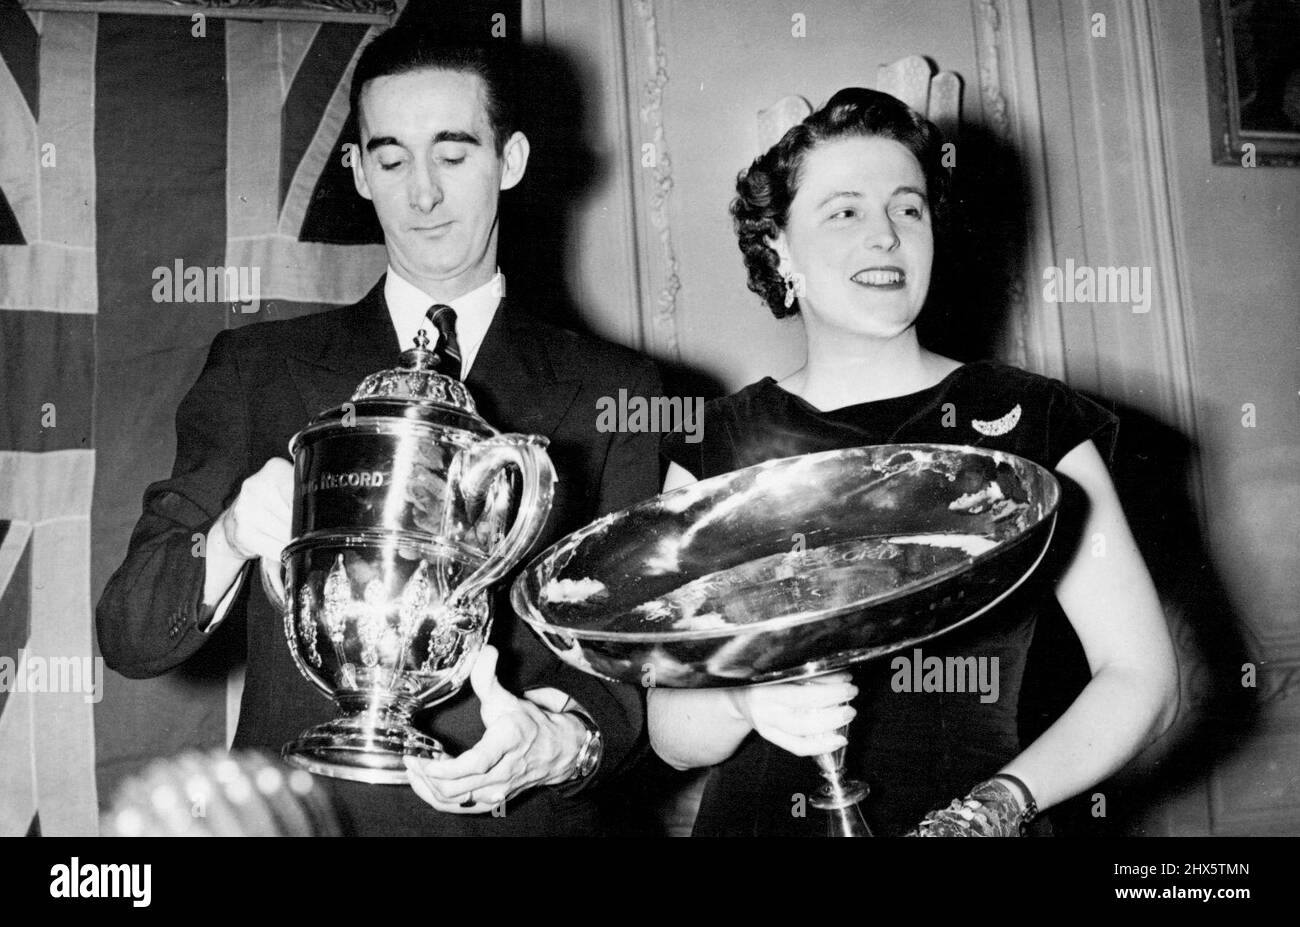 Le sportif et sportif de l'année -- Gordon Pirie avec divers Pat Smythe après avoir reçu leur prix à l'Hôtel Savoy, Londres. Dans le bulletin national organisé par le Sporting Record, Gordon Pirie, le célèbre coureur de Grande-Bretagne, a été choisi comme sportif de l'année. Miss Pat Smythe, la célèbre horsewoman, a été choisie comme la Sportswoman de l'année. Gordon Pirie a également reçu le trophée B.B.C comme sportif de télévision de l'année. 29 décembre 1955. Banque D'Images